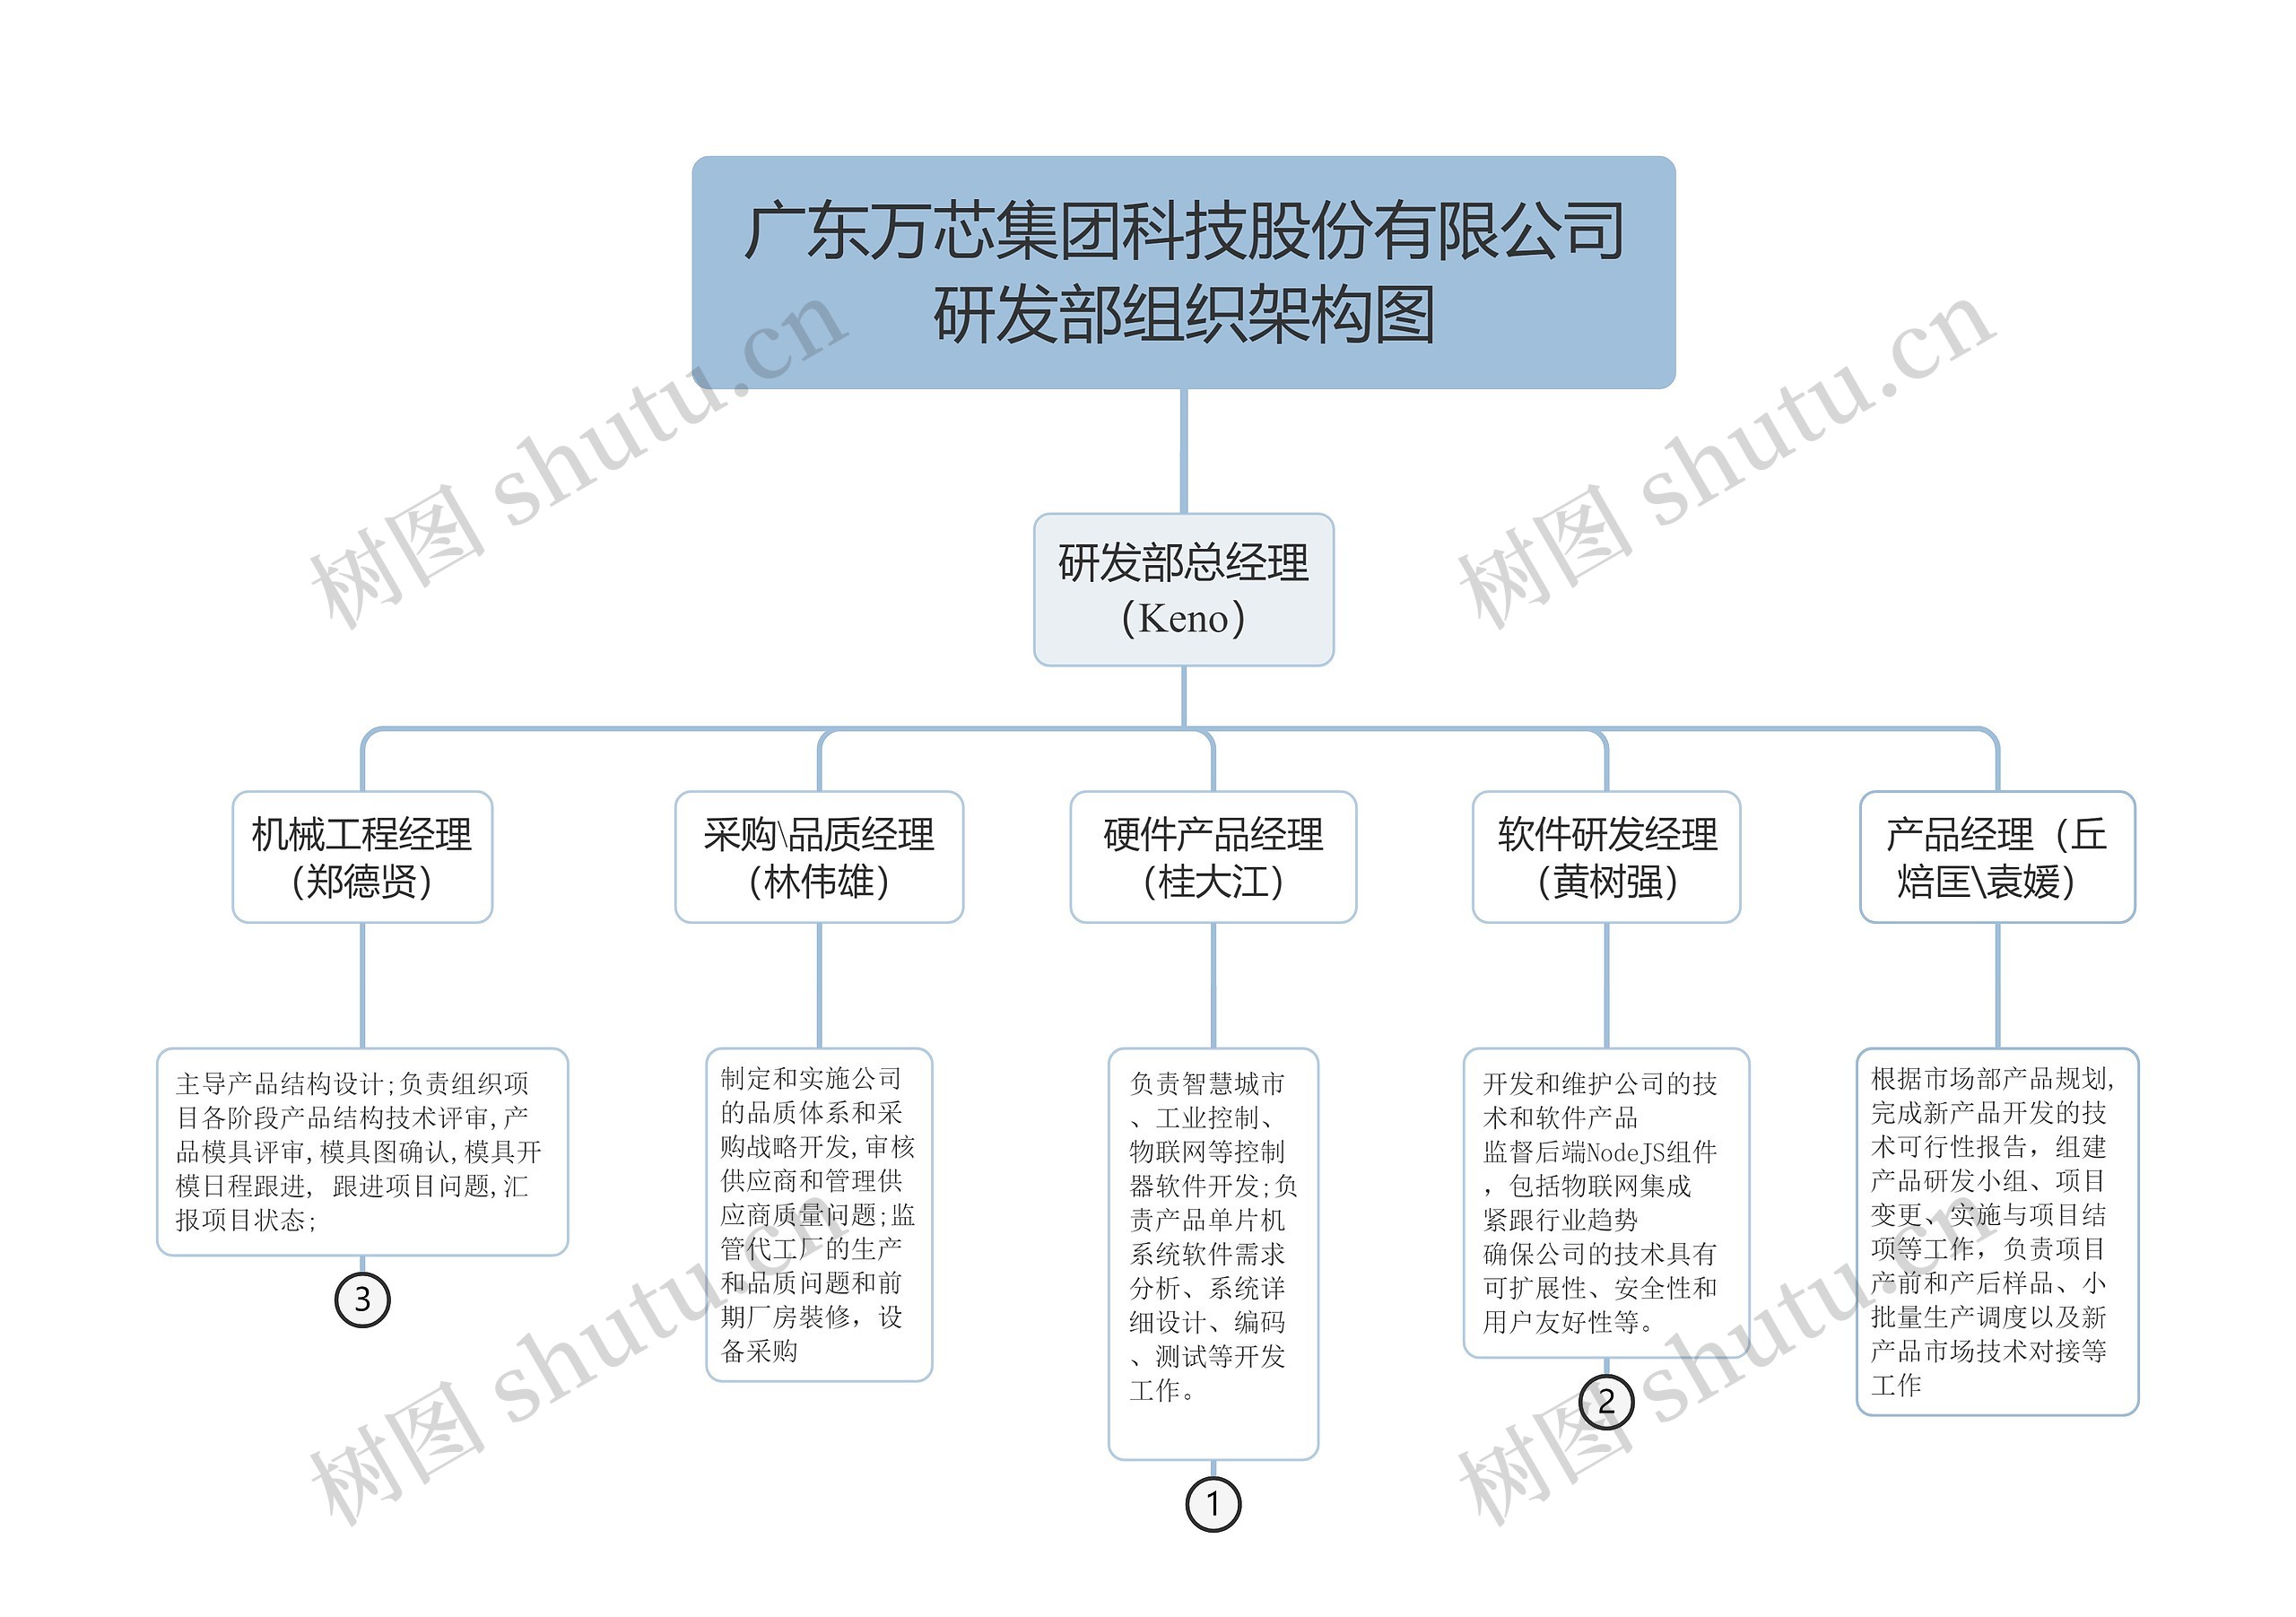 广东万芯集团科技股份有限公司研发部组织架构图